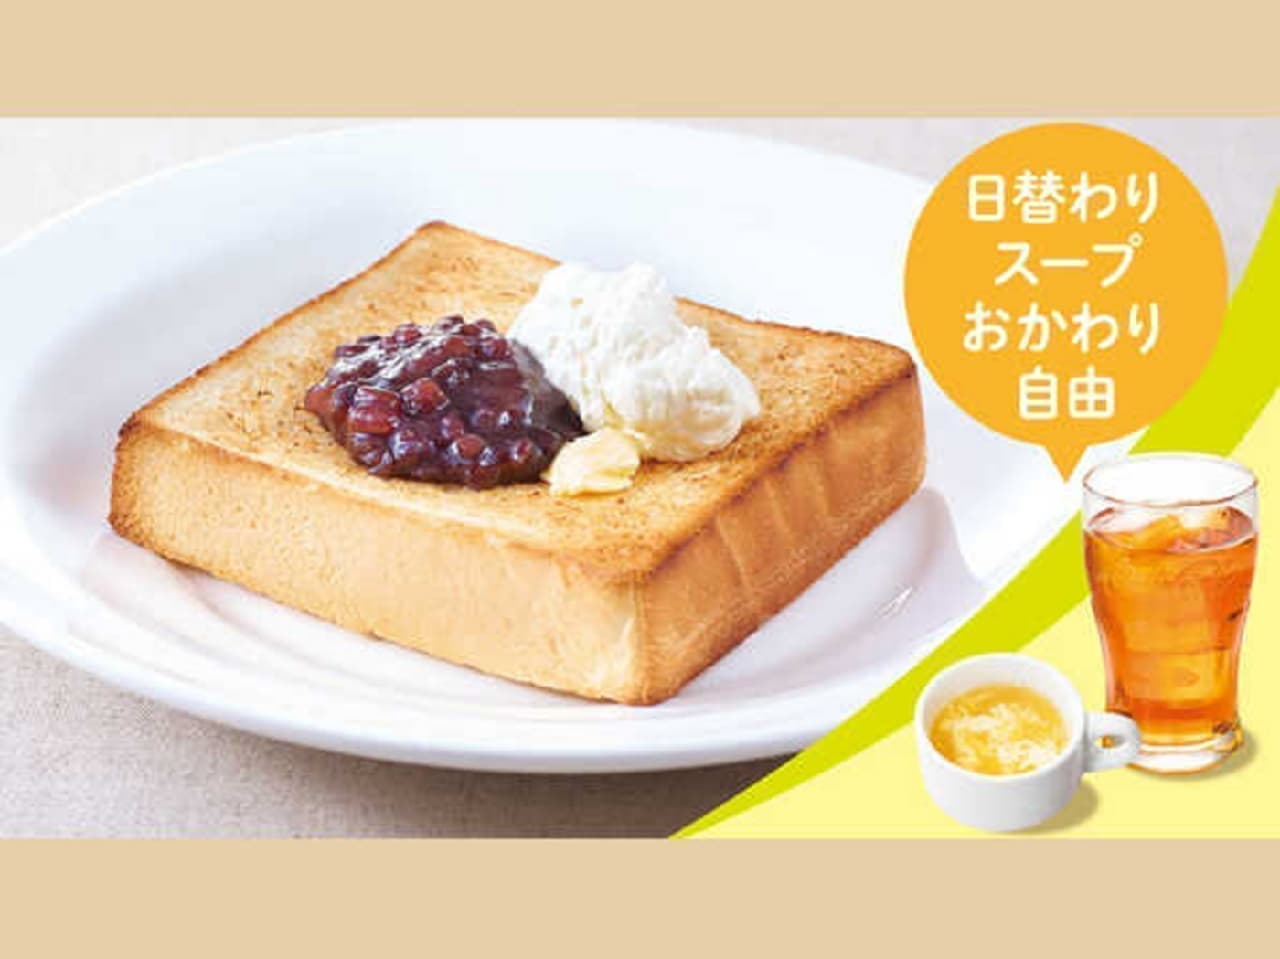 Gusto "Ogura Cream Toast Set